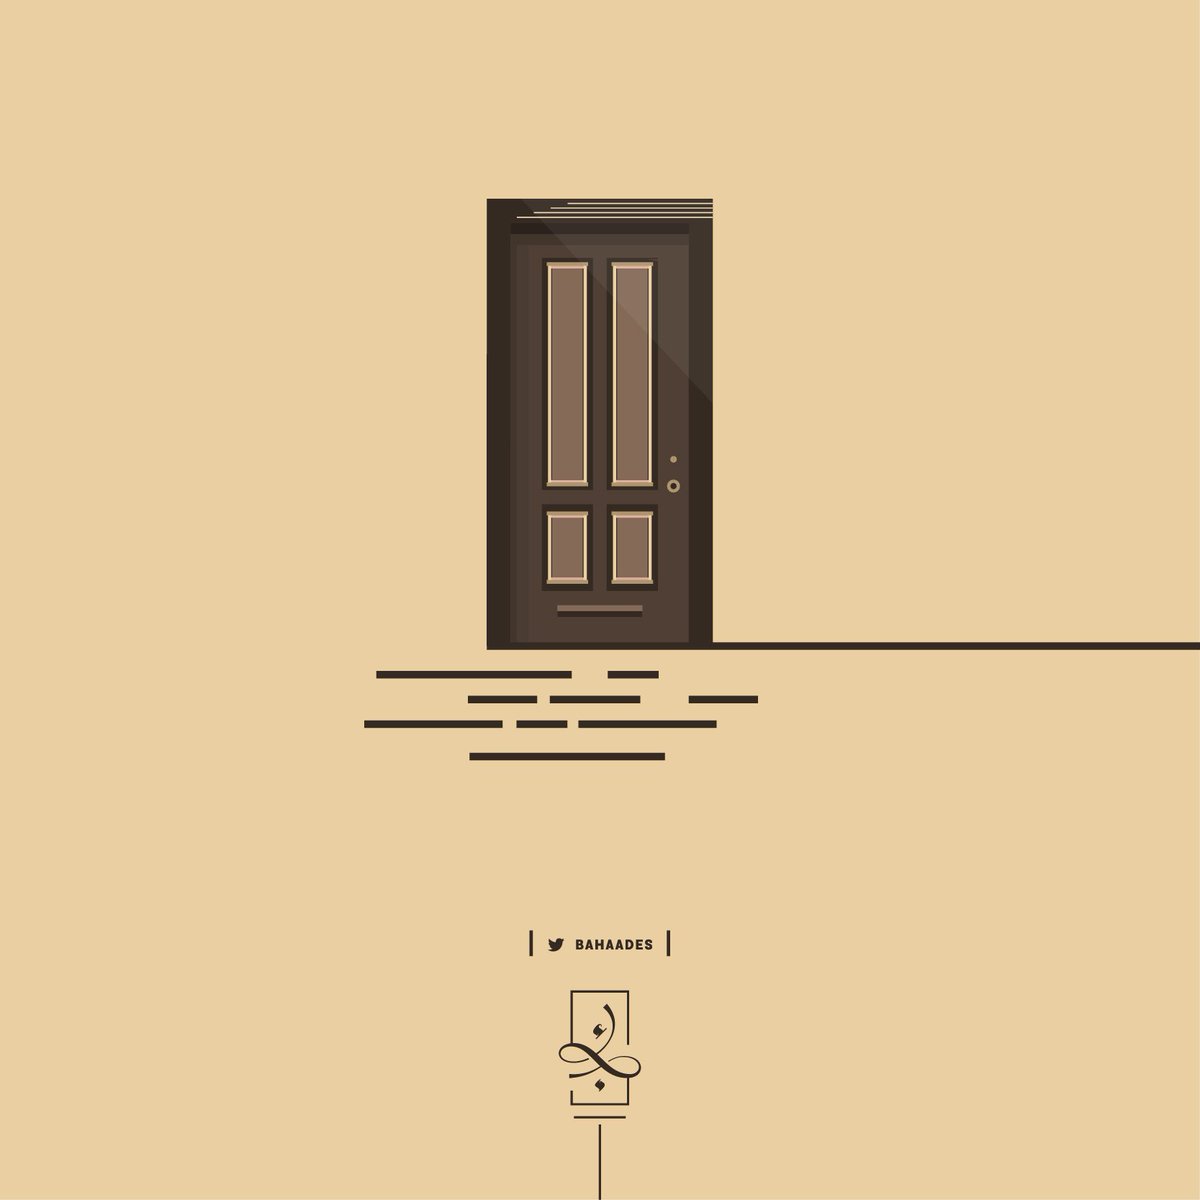 بهاء الطحان | مصمم شعارات on X: "محاولة رسم باب :") #رسام #الستريتور  #ديزاين #فن #باب #art #design #illustration #Illustrator #door  https://t.co/MYnwxGCnHt" / X